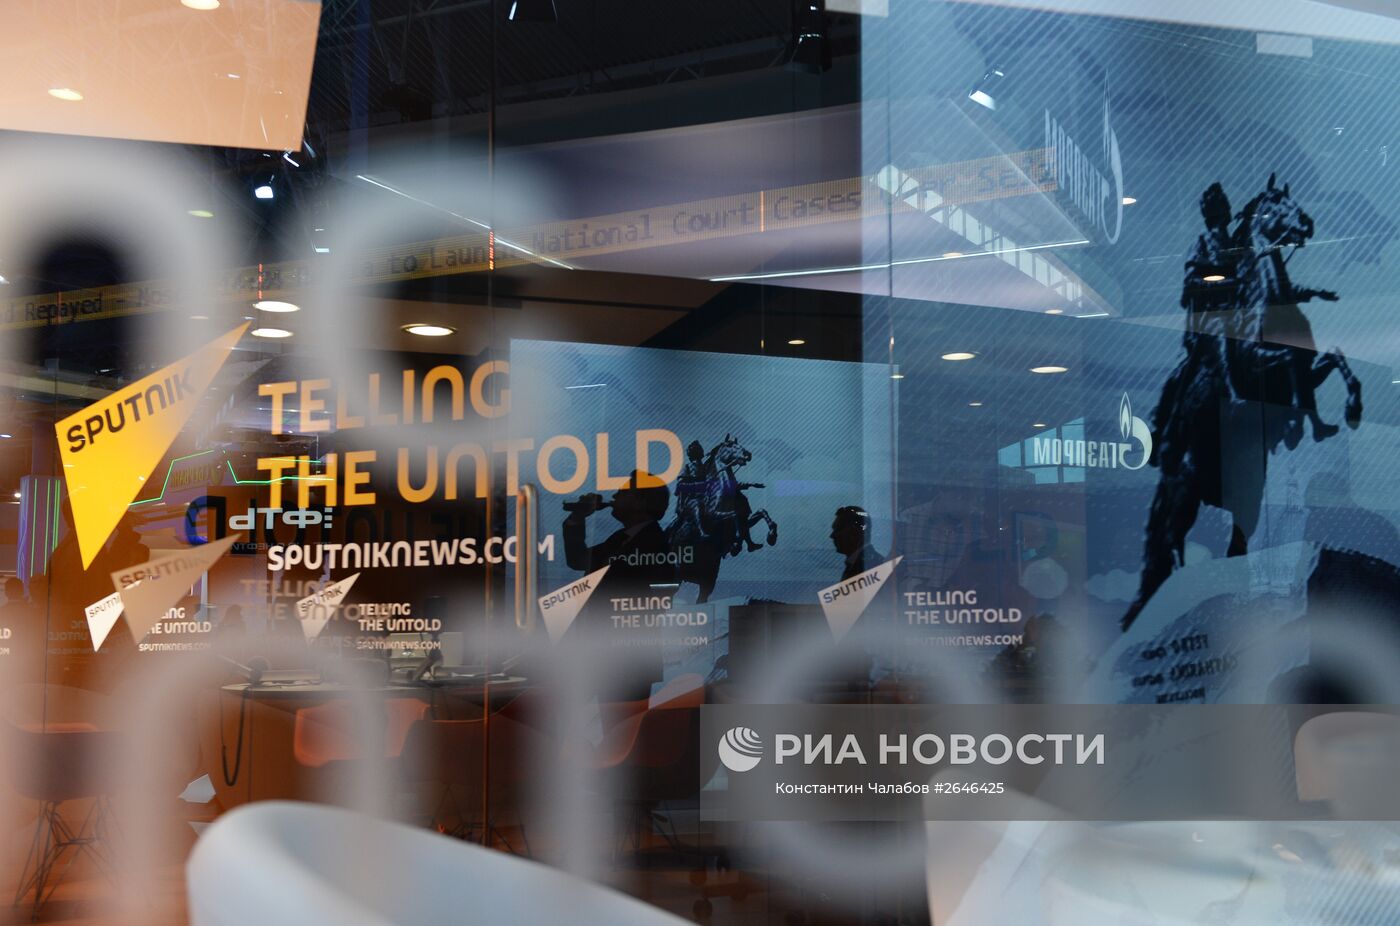 Петербургский международный экономический форум 2015 (ПМЭФ). День второй